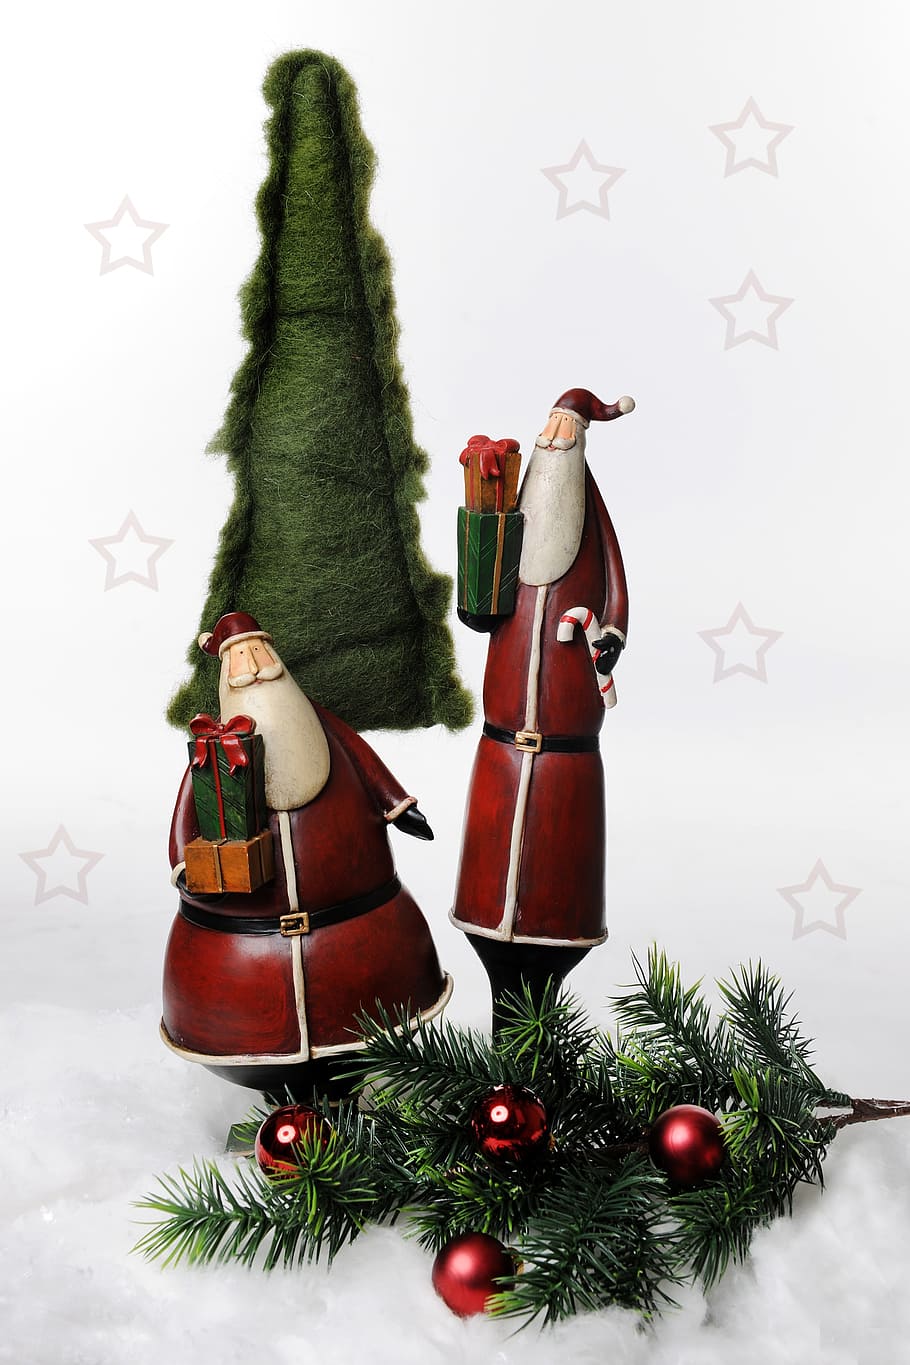 クリスマスモチーフ, サンタクロース, クリスマス, 図, クリスマスの時期, 装飾, クリスマスの装飾, お祝い, 休日, クリスマスツリー